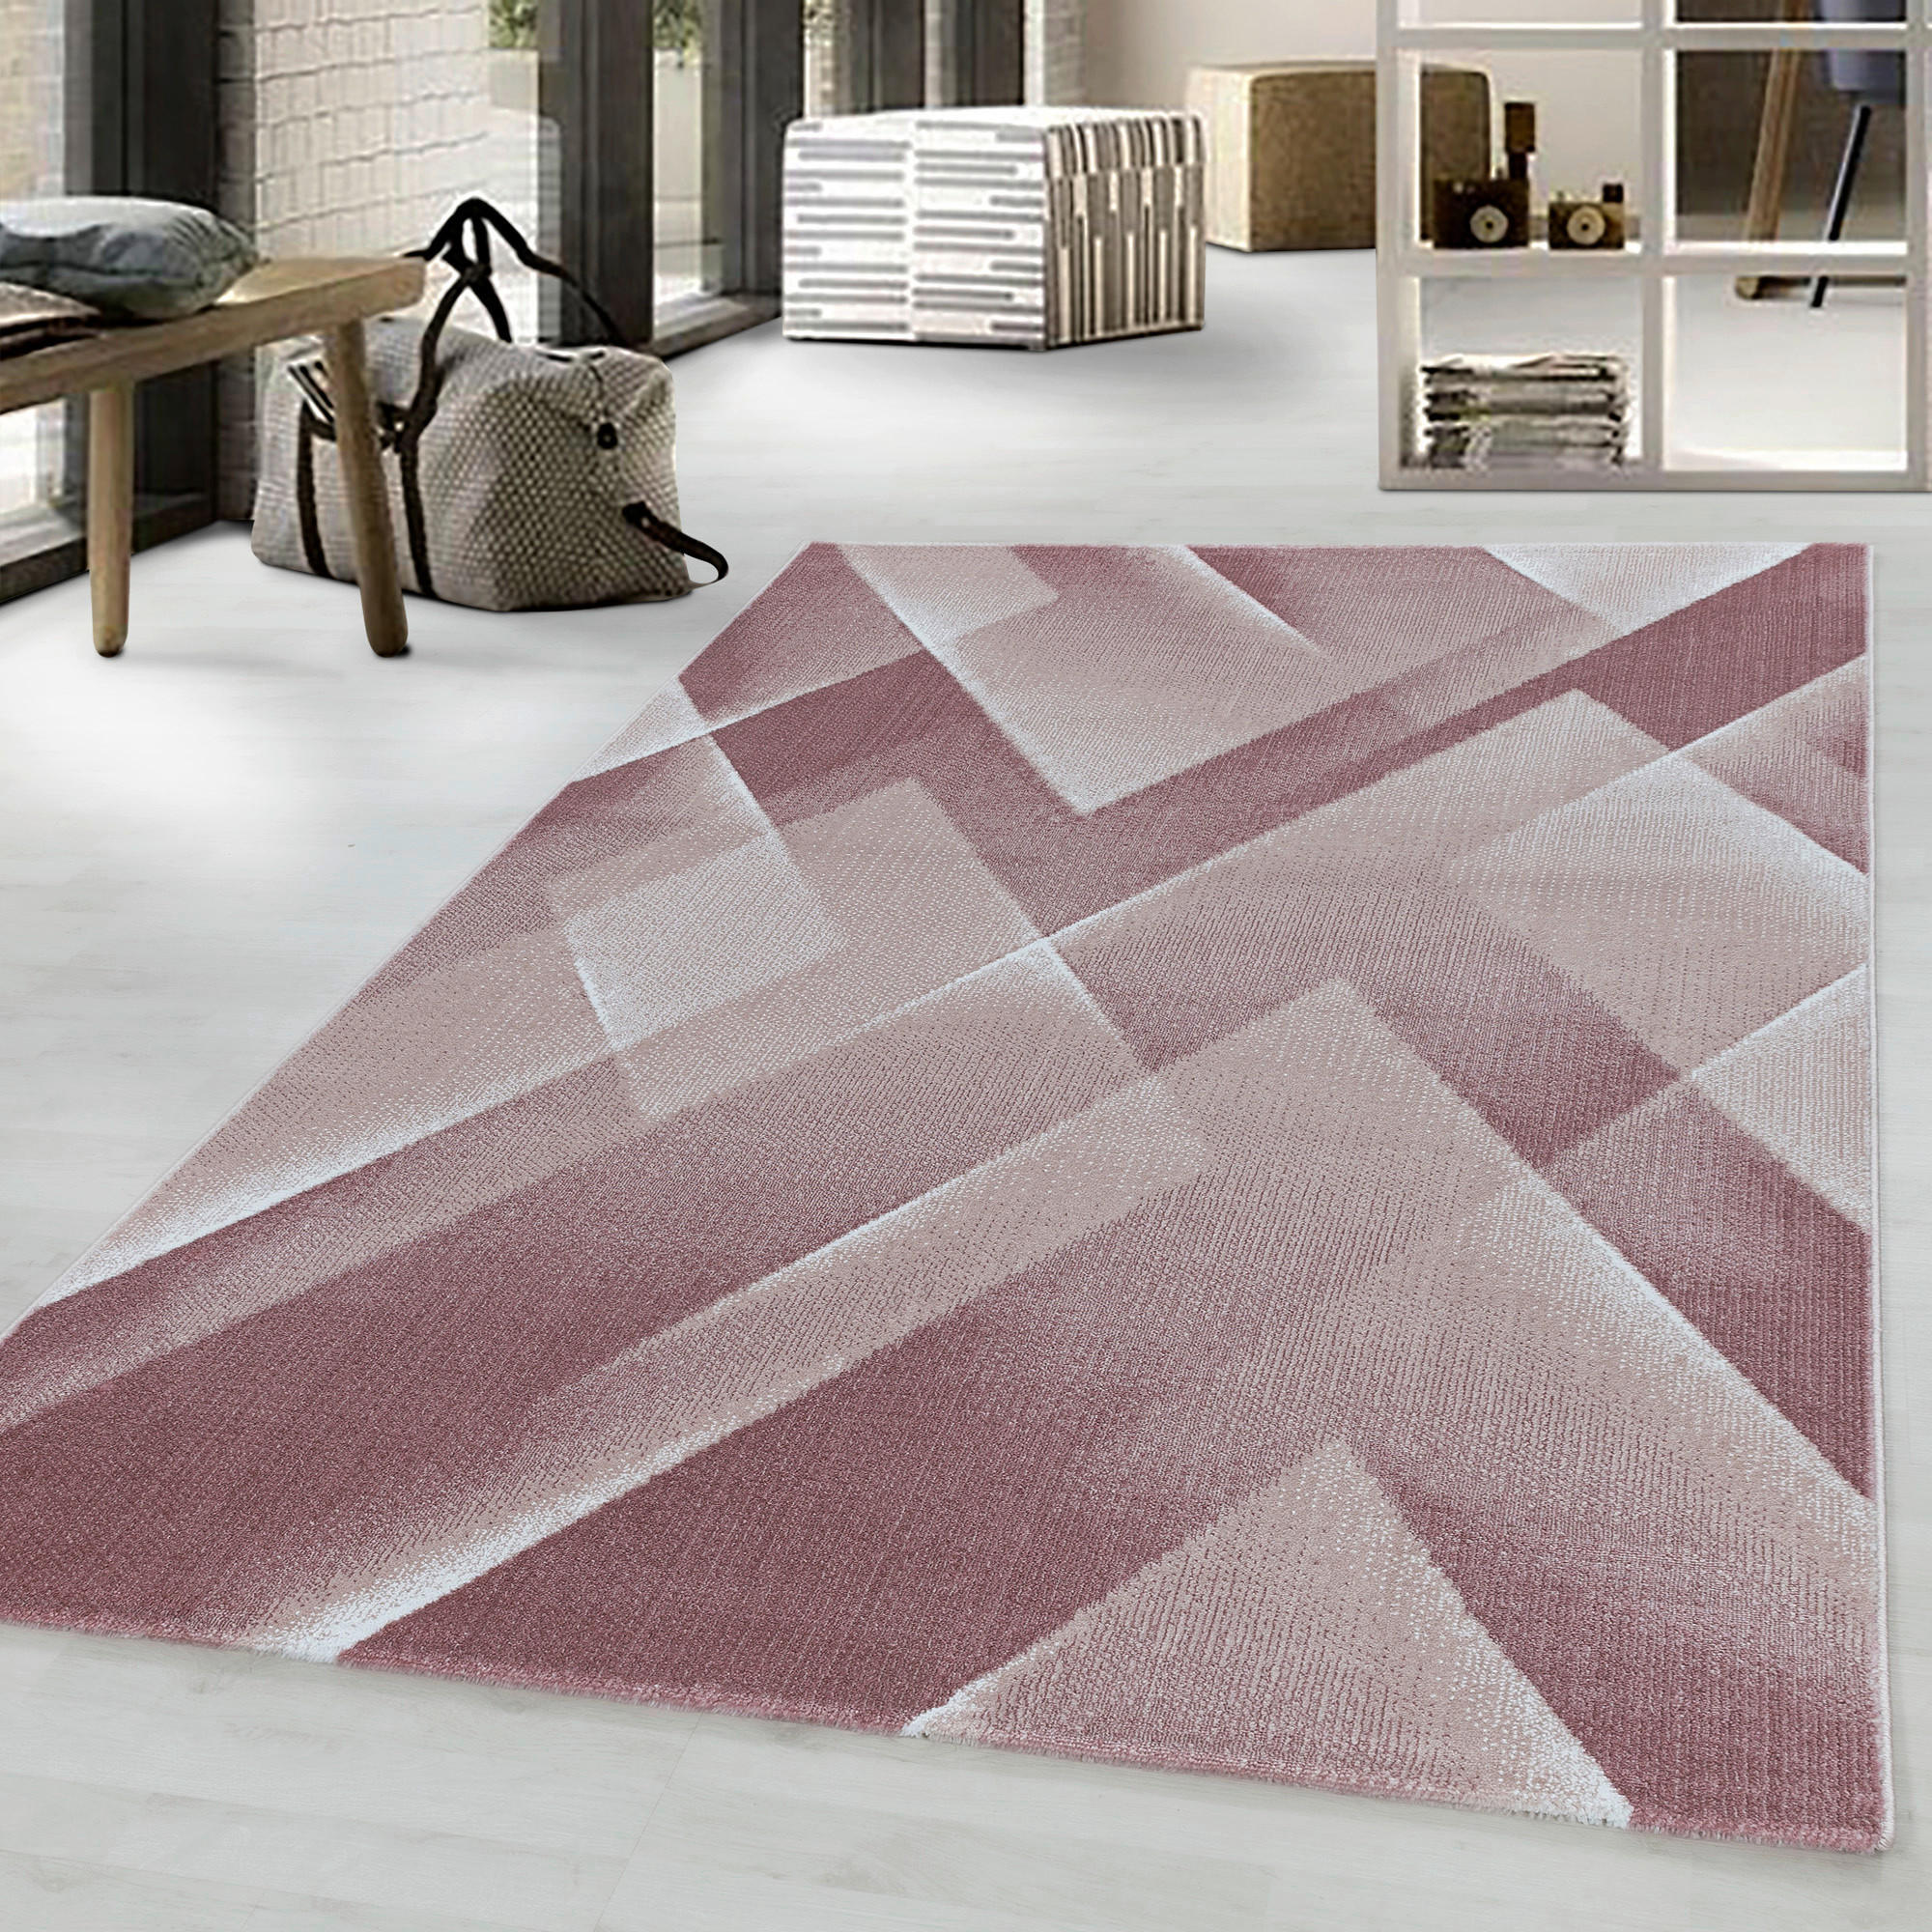 WEBTEPPICH  240/340 cm  Pink   - Pink, Design, Textil (240/340cm) - Novel